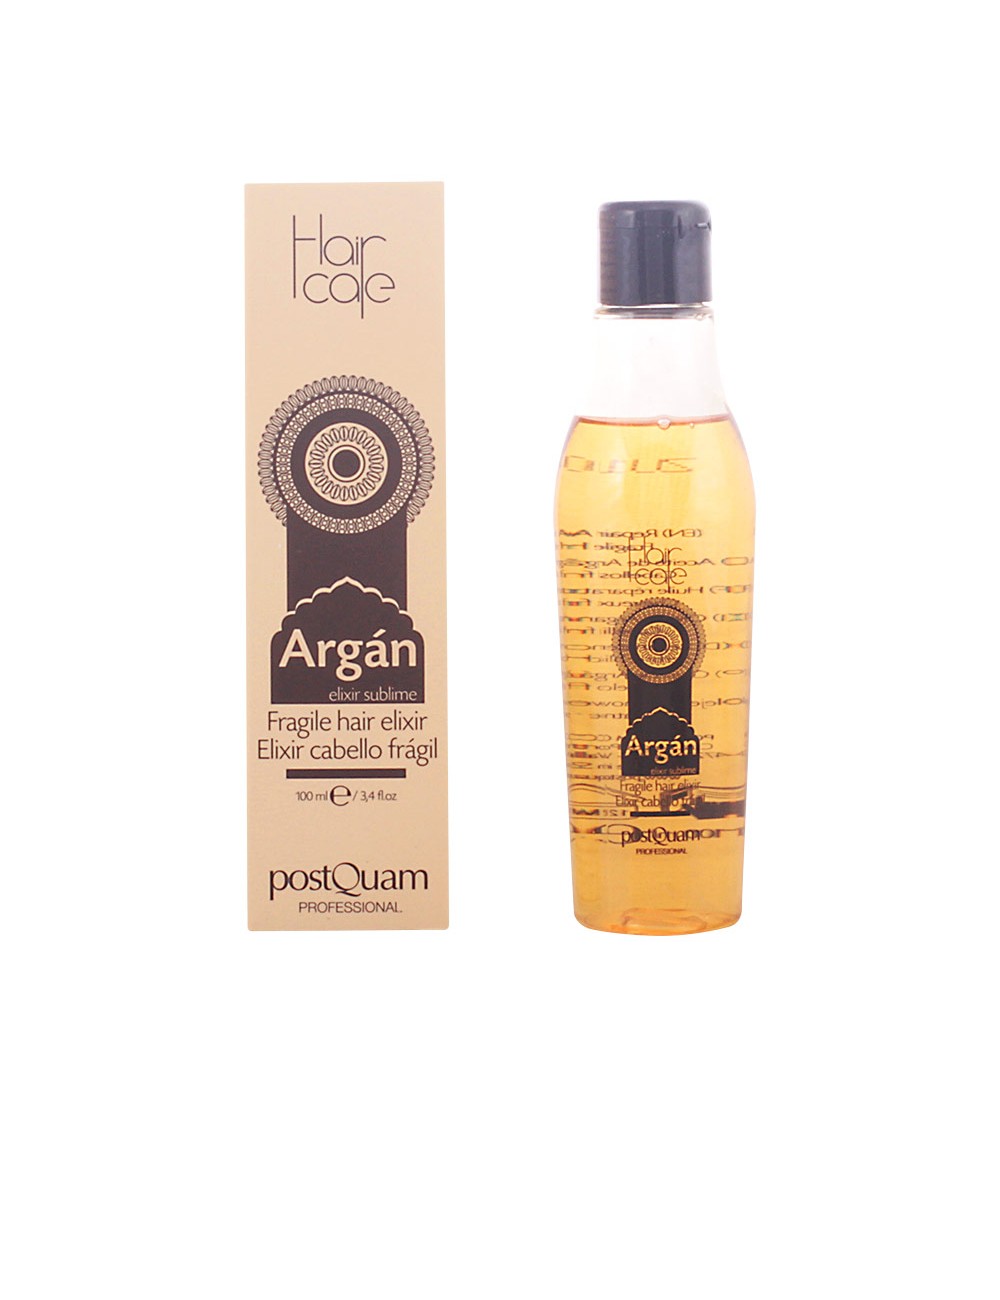 HAIRCARE ARGÁN fragile hair elixir 100 ml